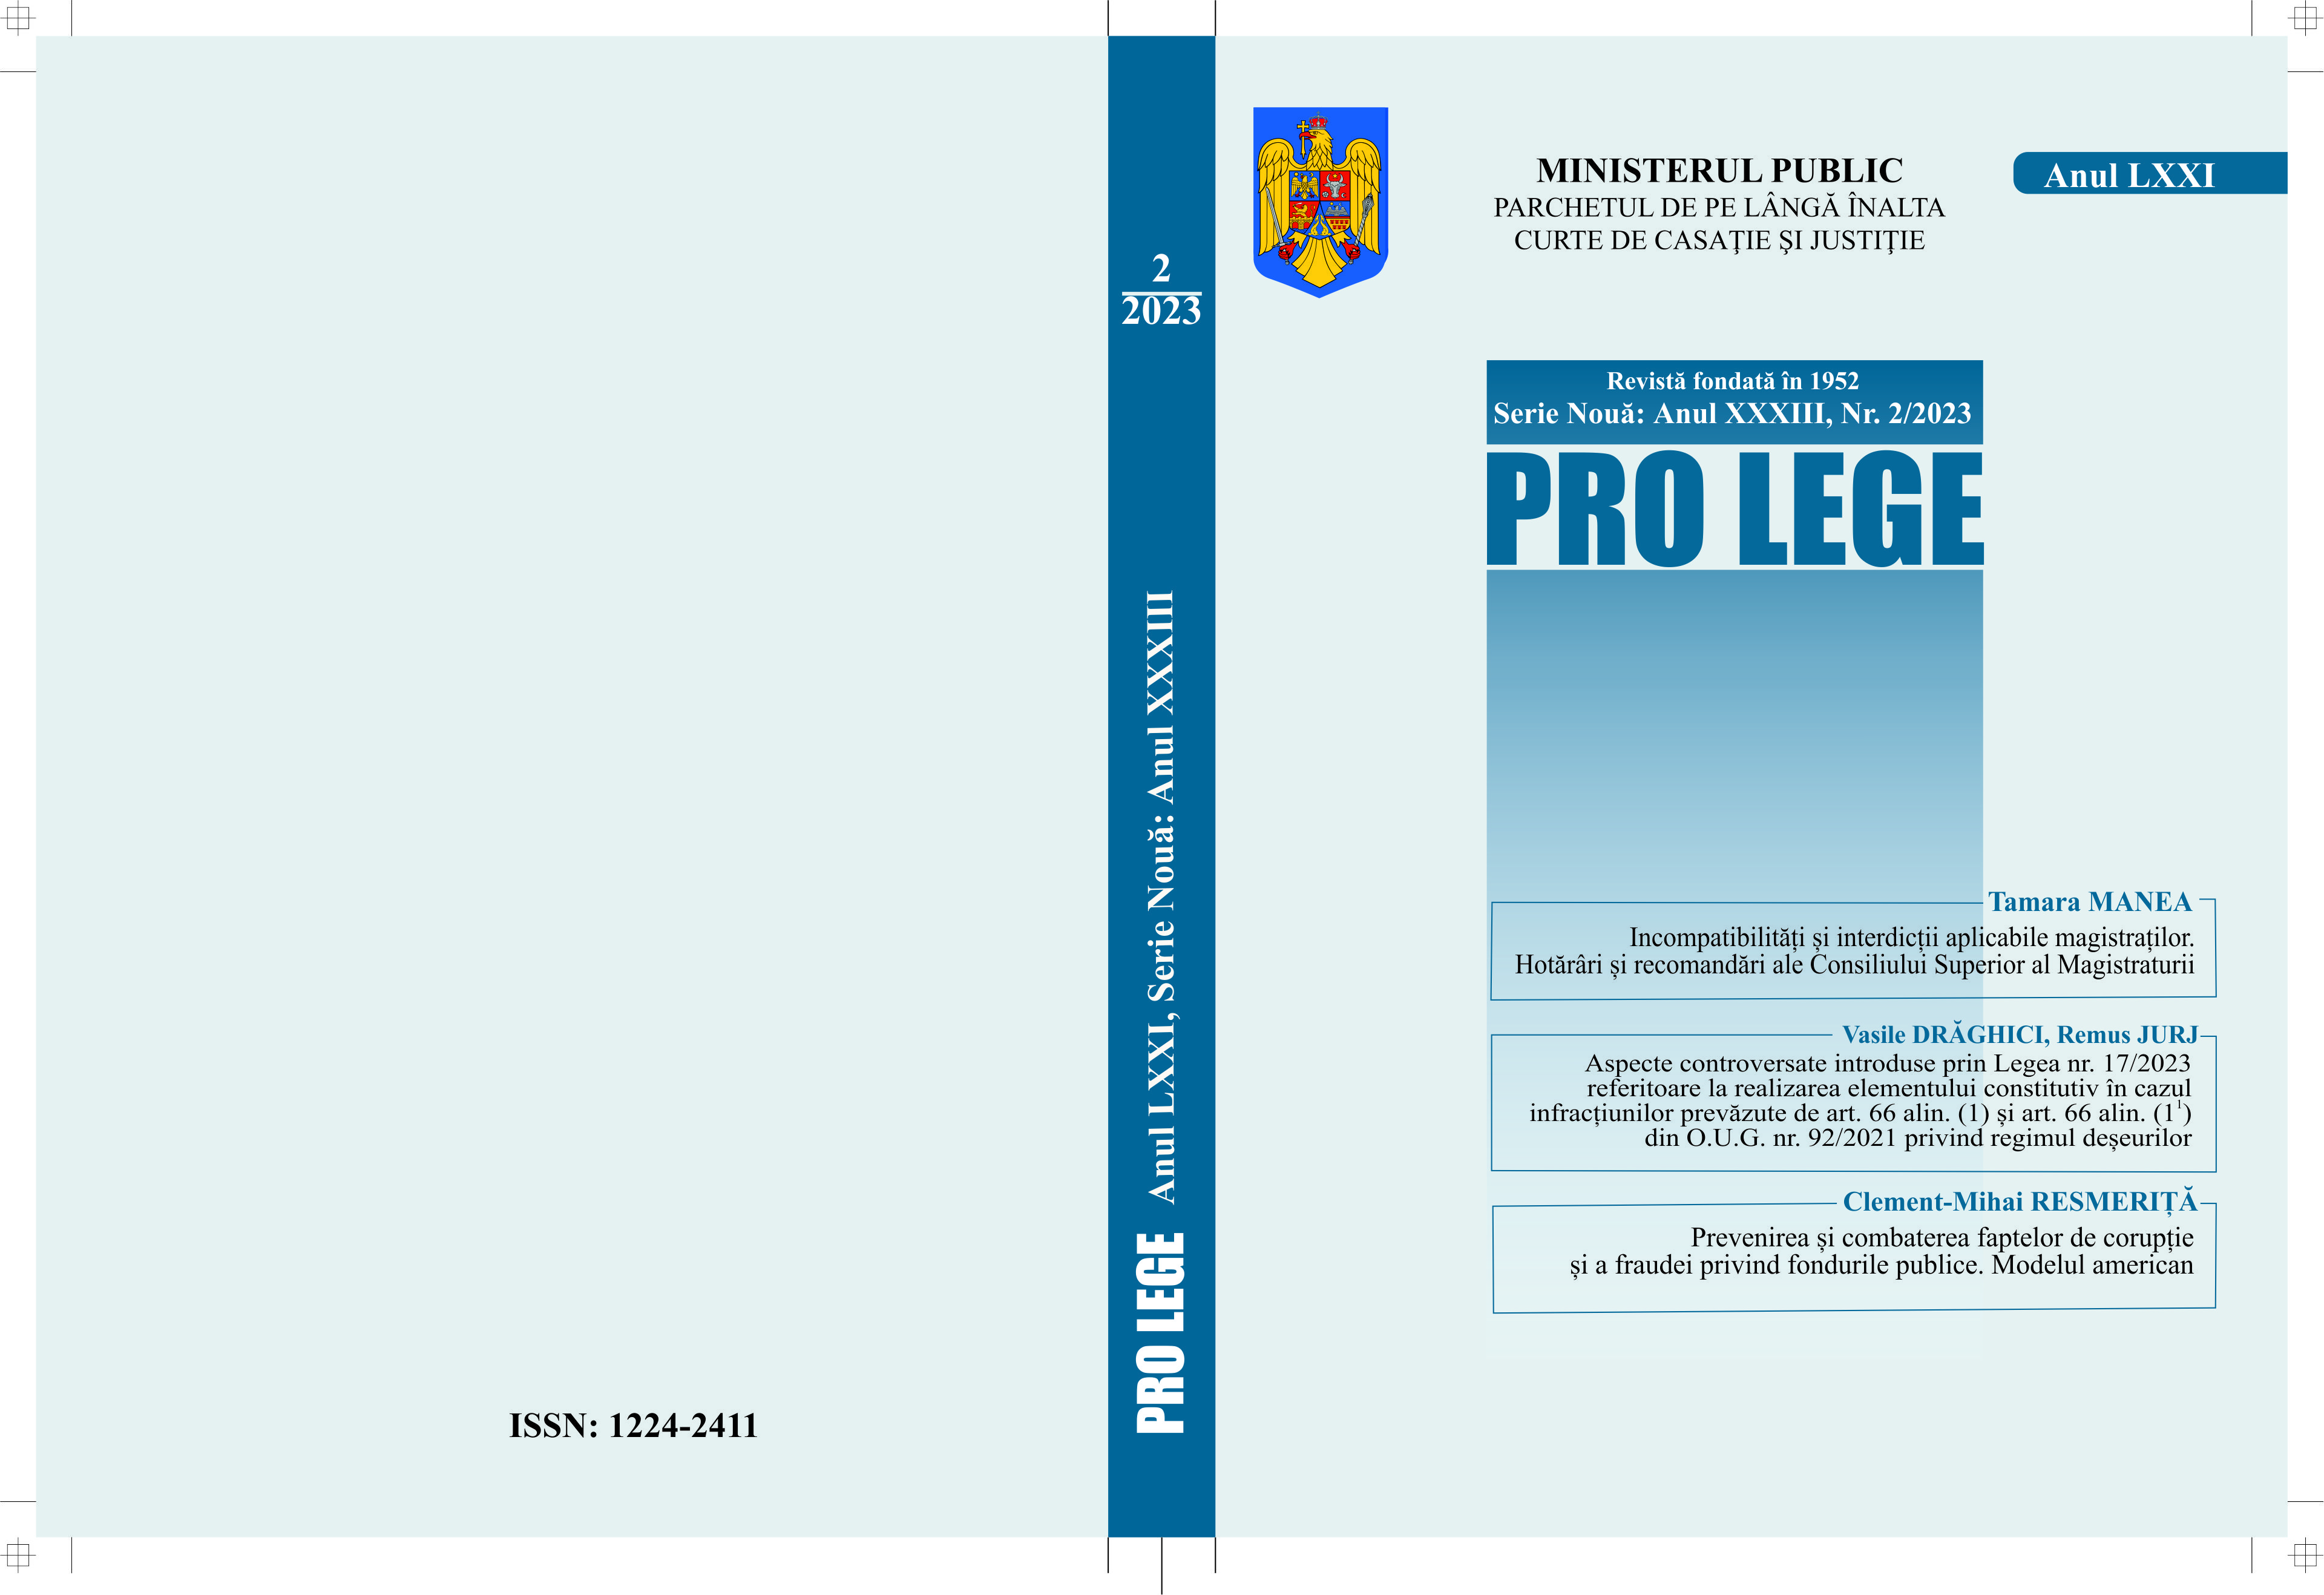 Decizia Curții Constituționale a României nr. 222 din 20 aprilie 2023 referitoare la excepţia de neconstituţionalitate a dispoziţiilor art. 159 alin. (3) teza finală din Codul penal